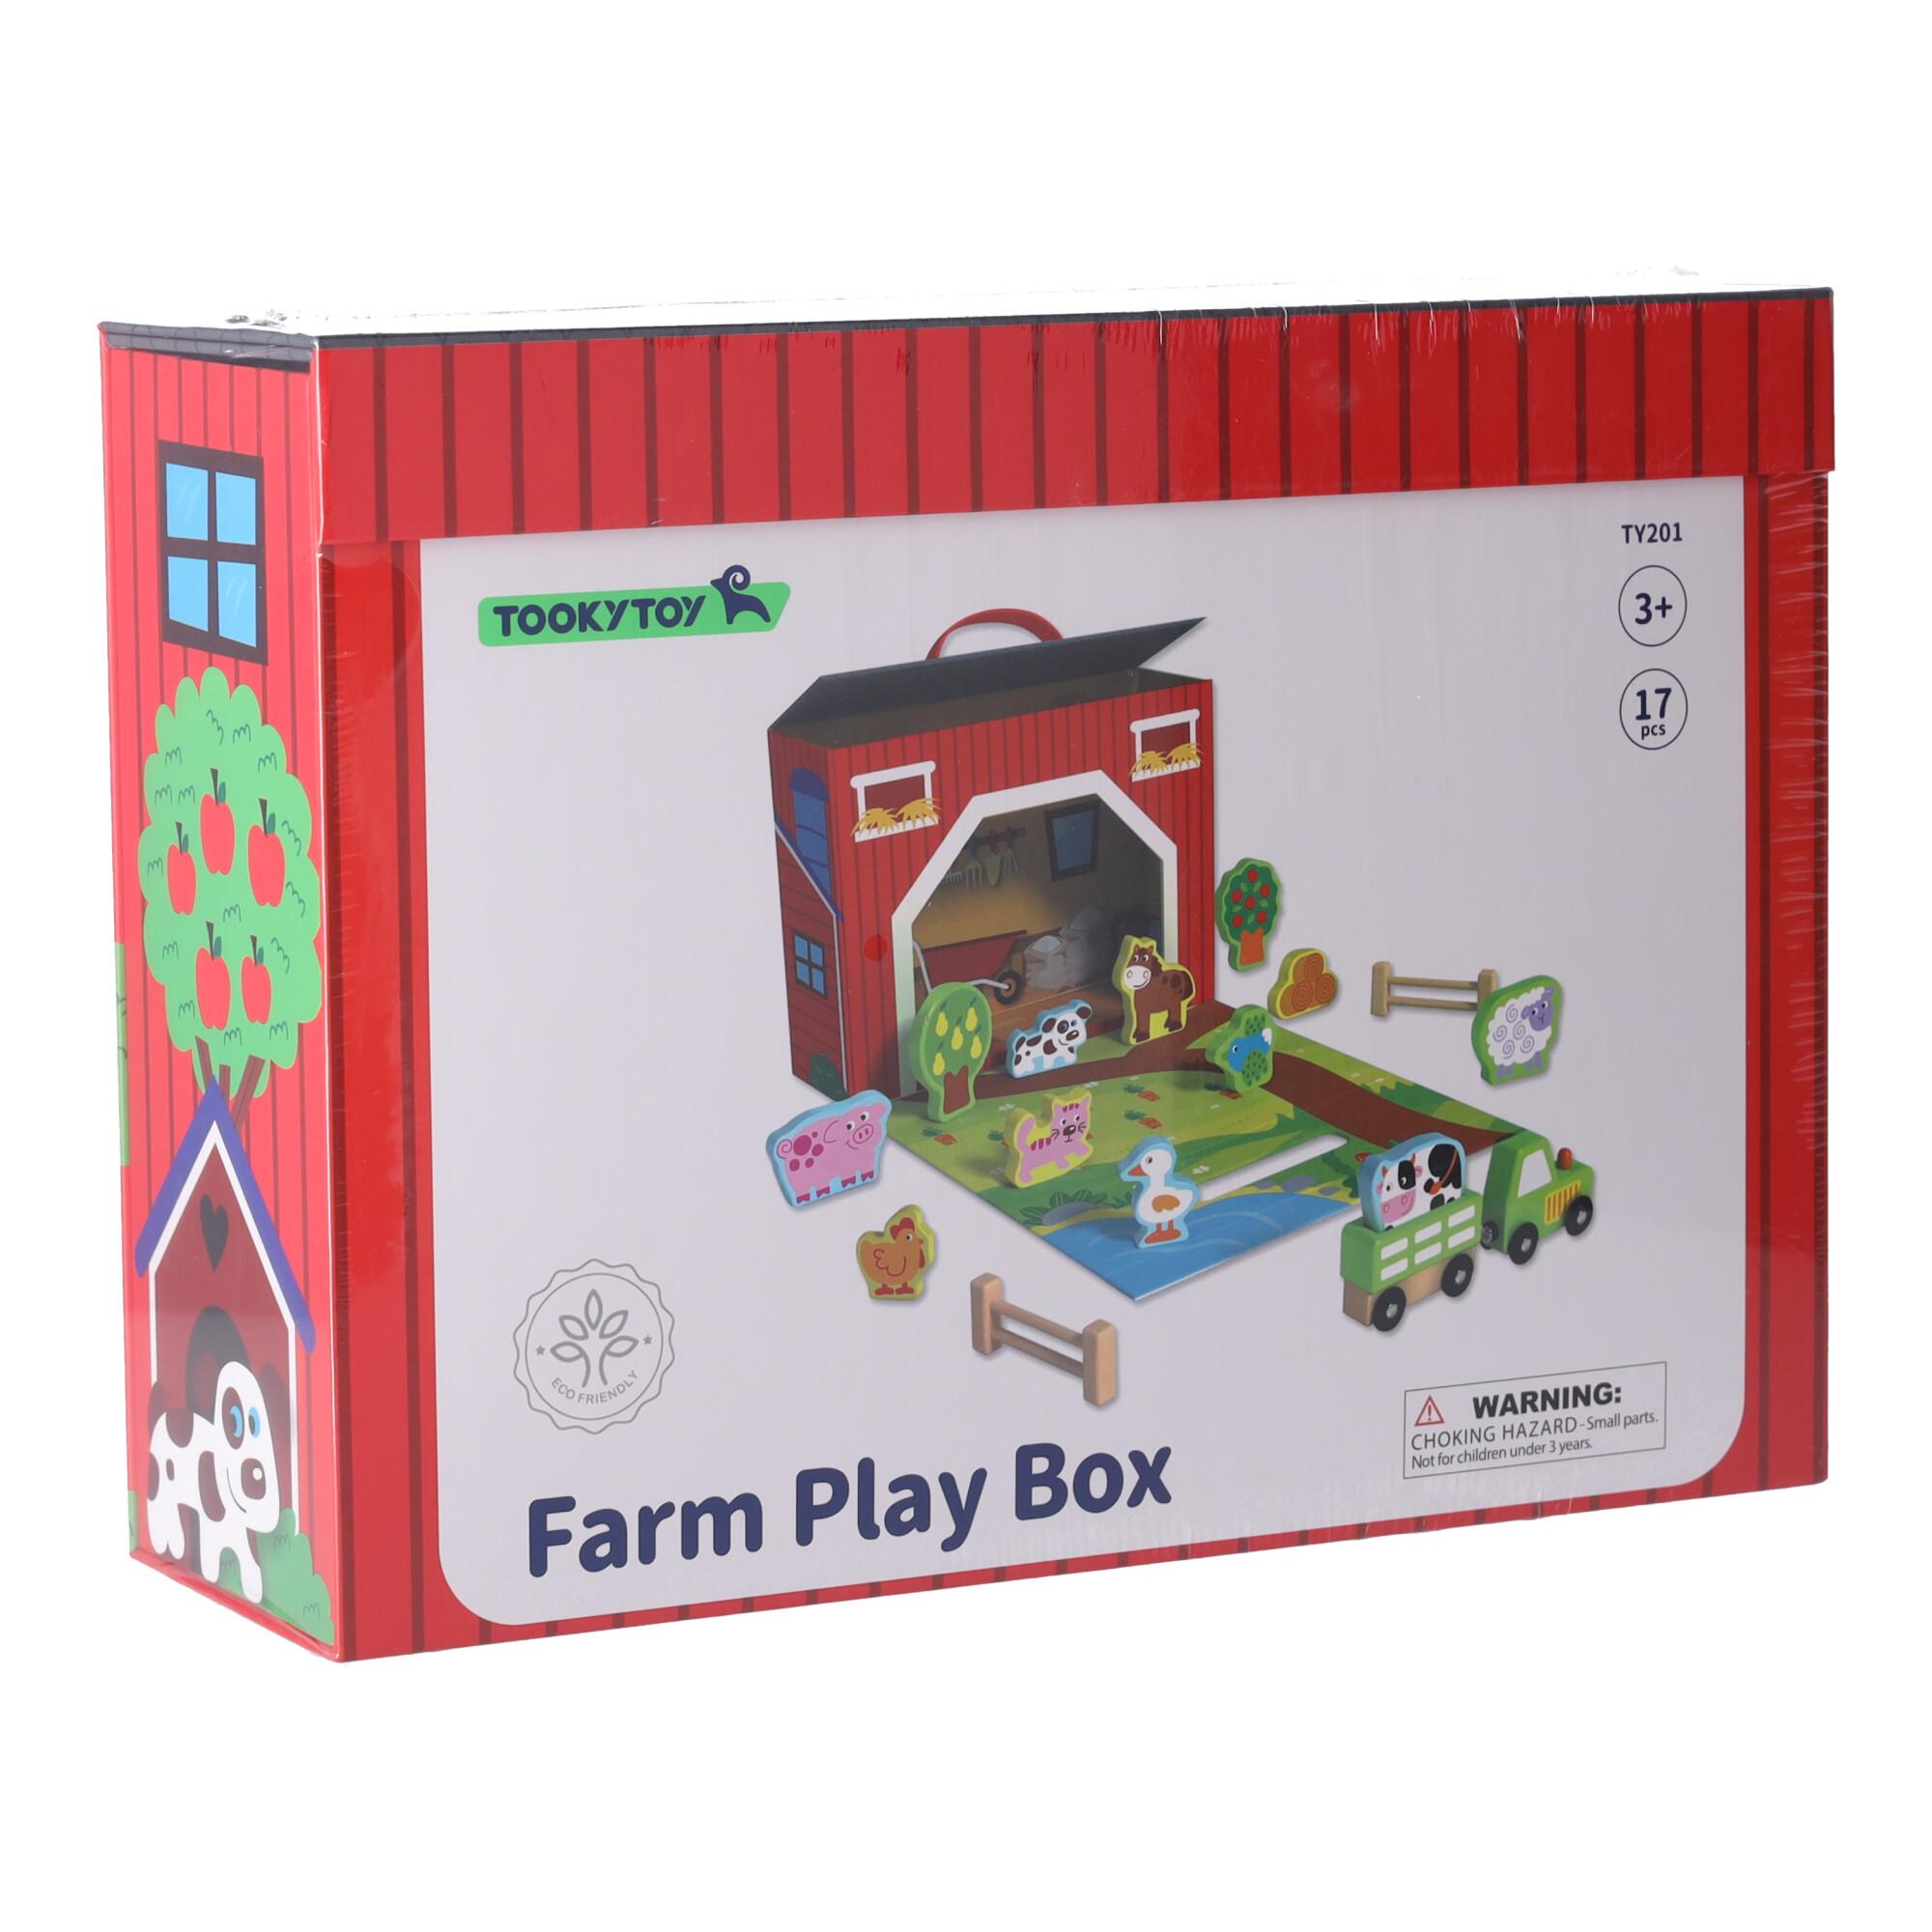 Farm Play Box